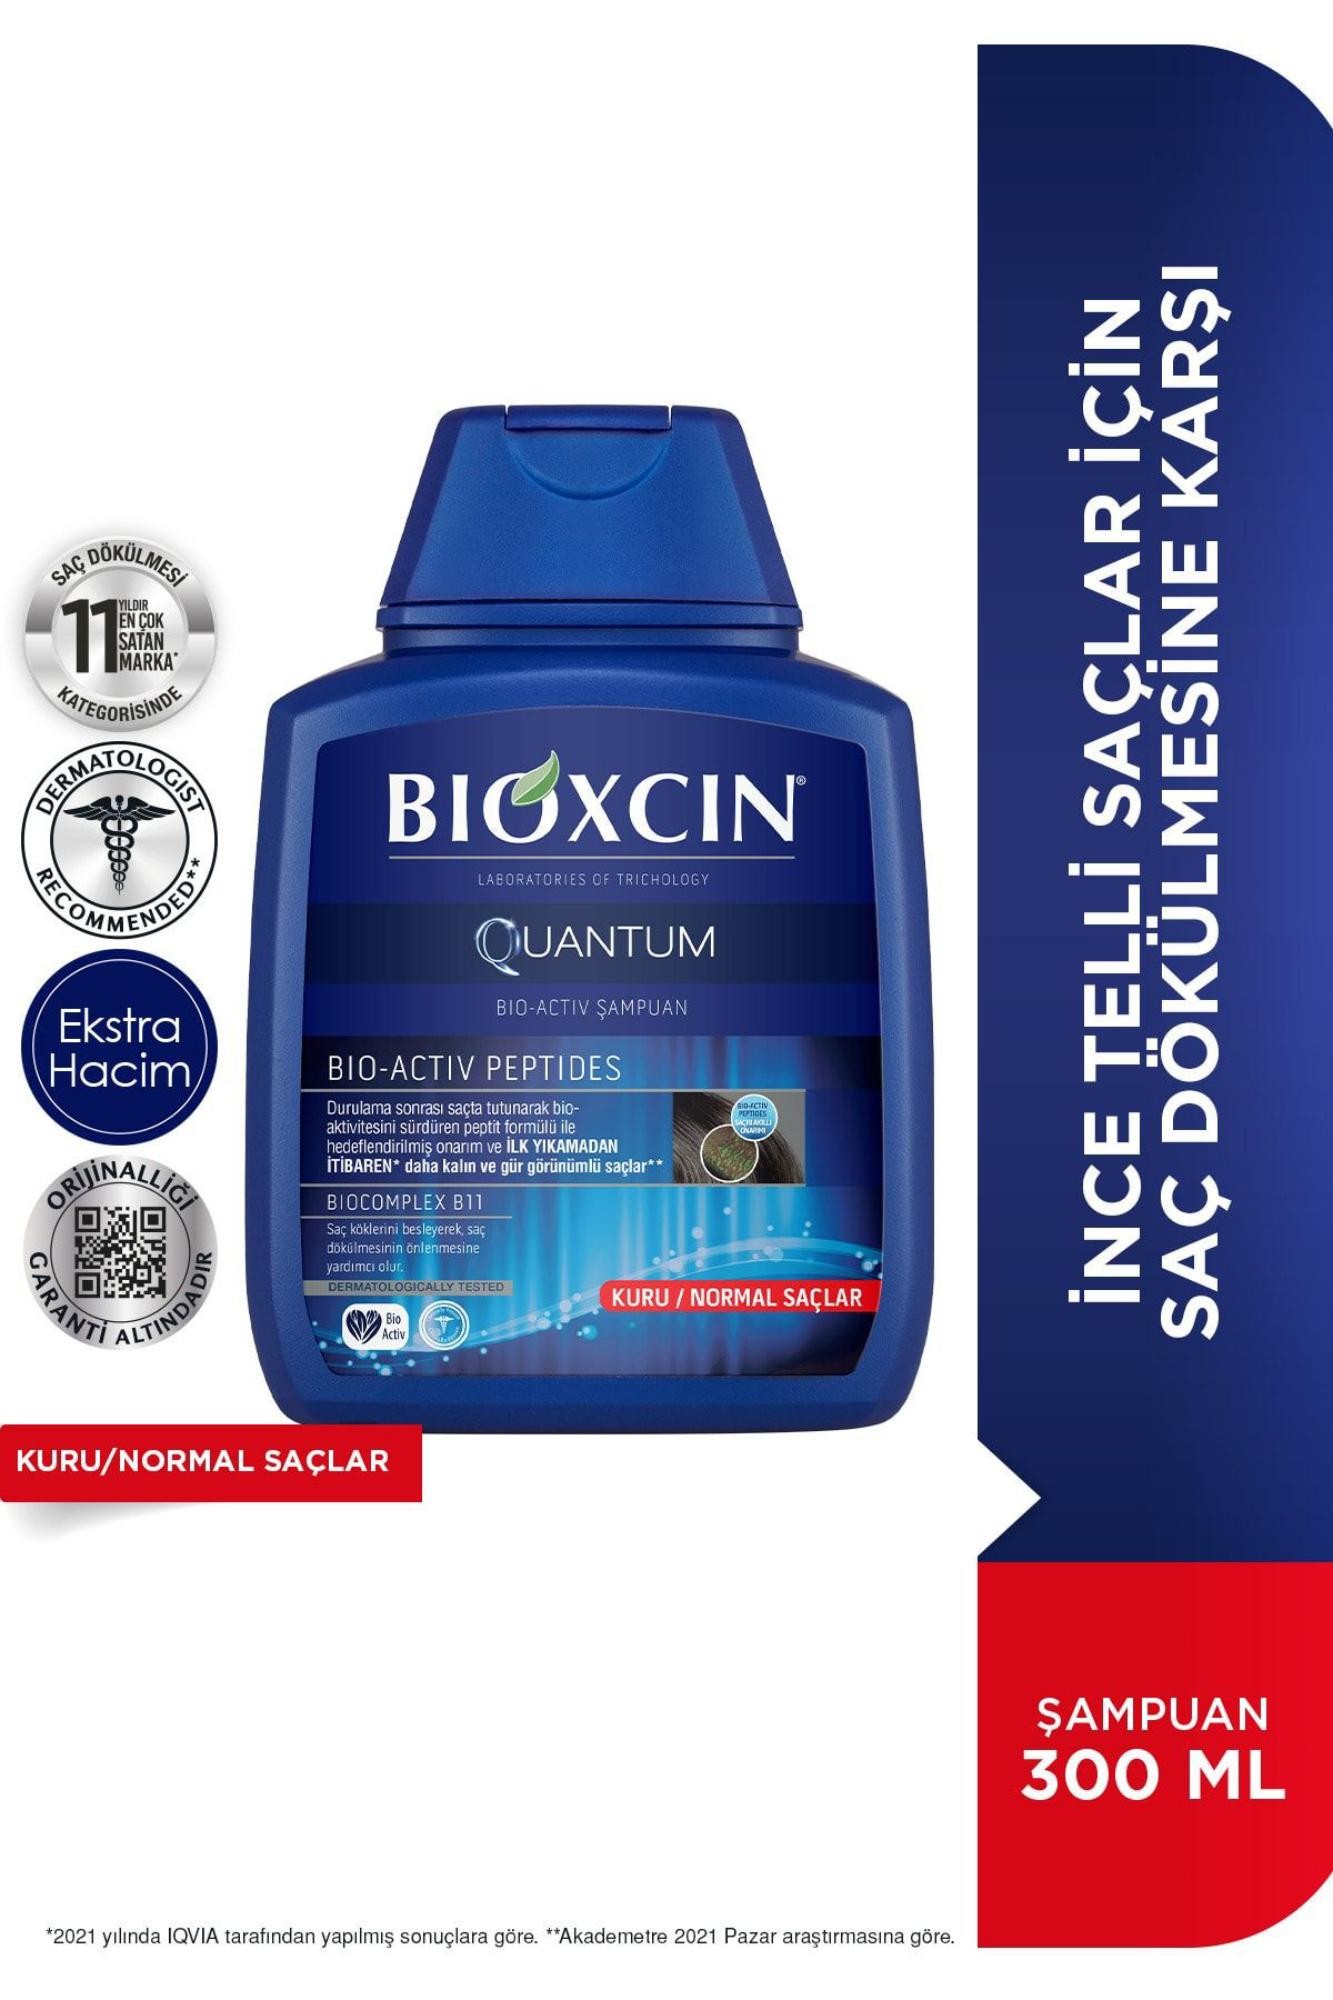 Bioxcin Quantum Shampoo for Dry and Normal Hair 300 Ml - Hair Loss Shampoo for Fine Hair